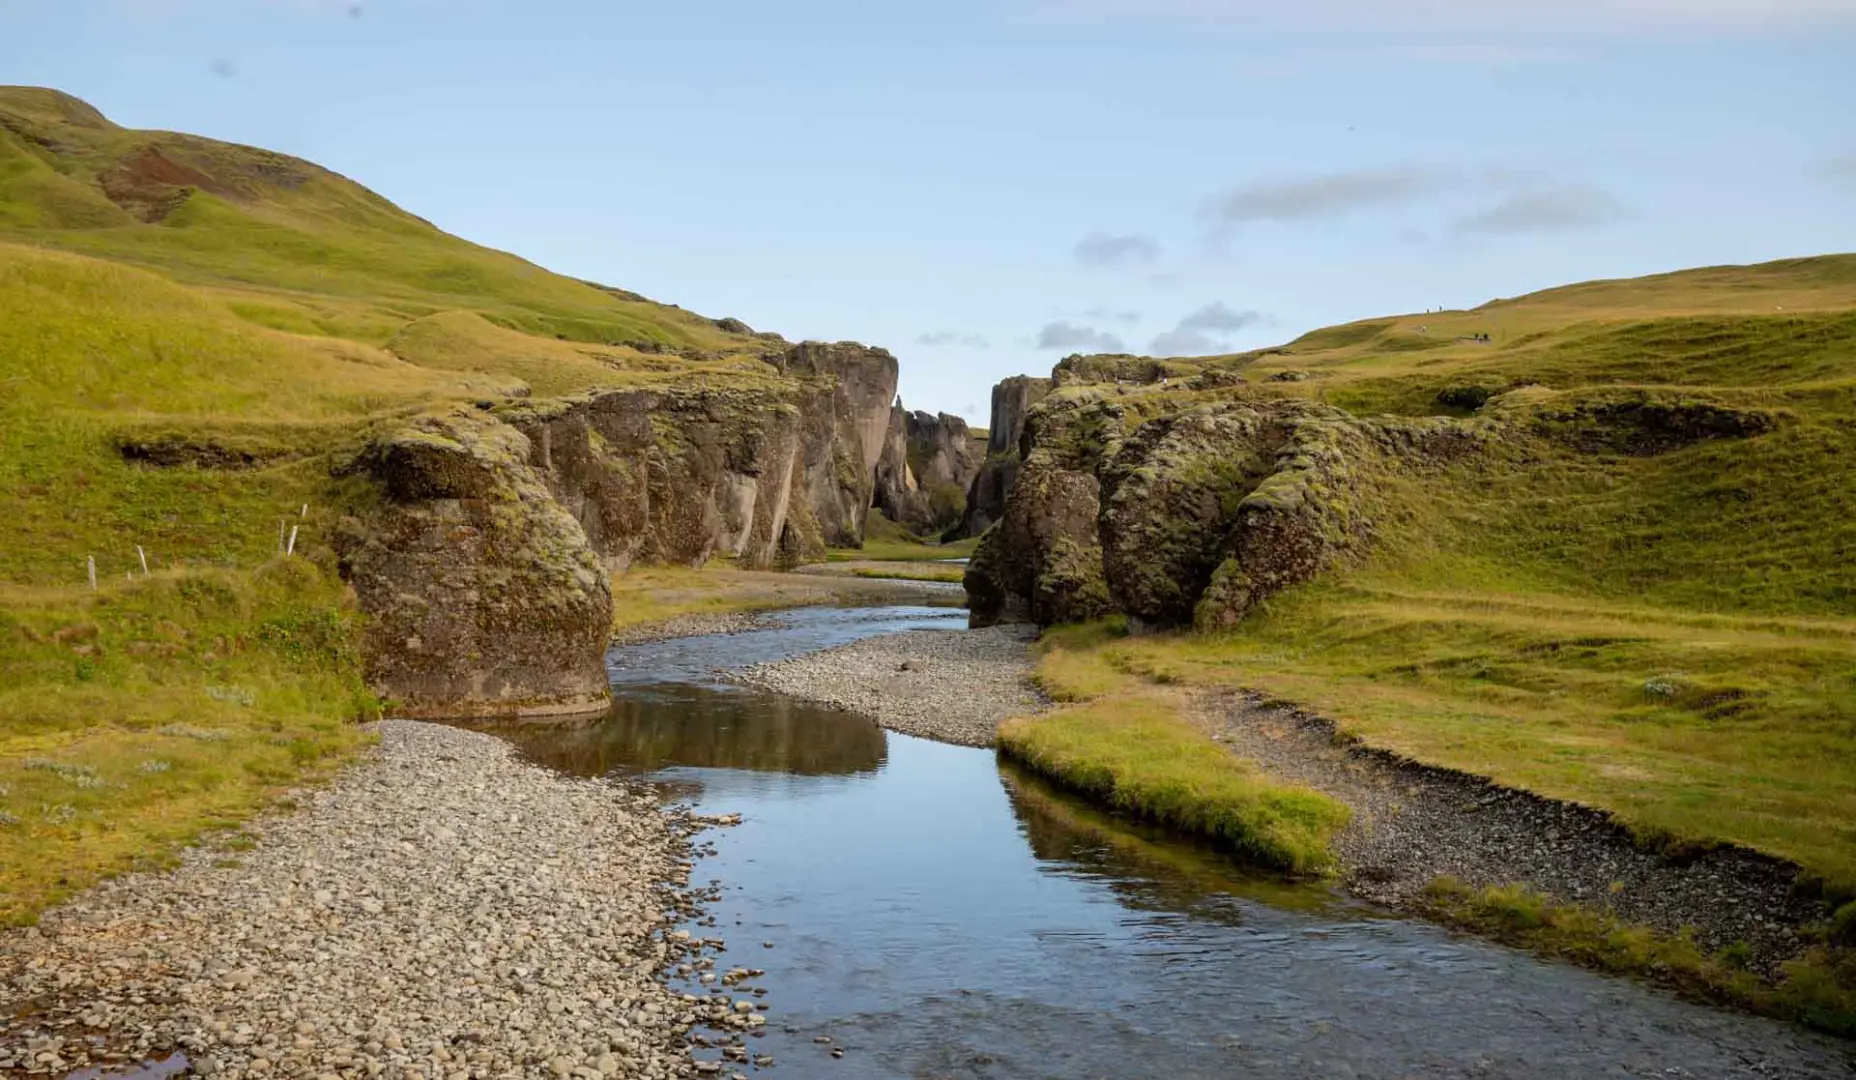 Únete a un viaje en grupo a Islandia, la tierra de fuego y hielo. Descubre las maravillas naturales de la famosa Ring Road, paisajes volcánicos y glaciares